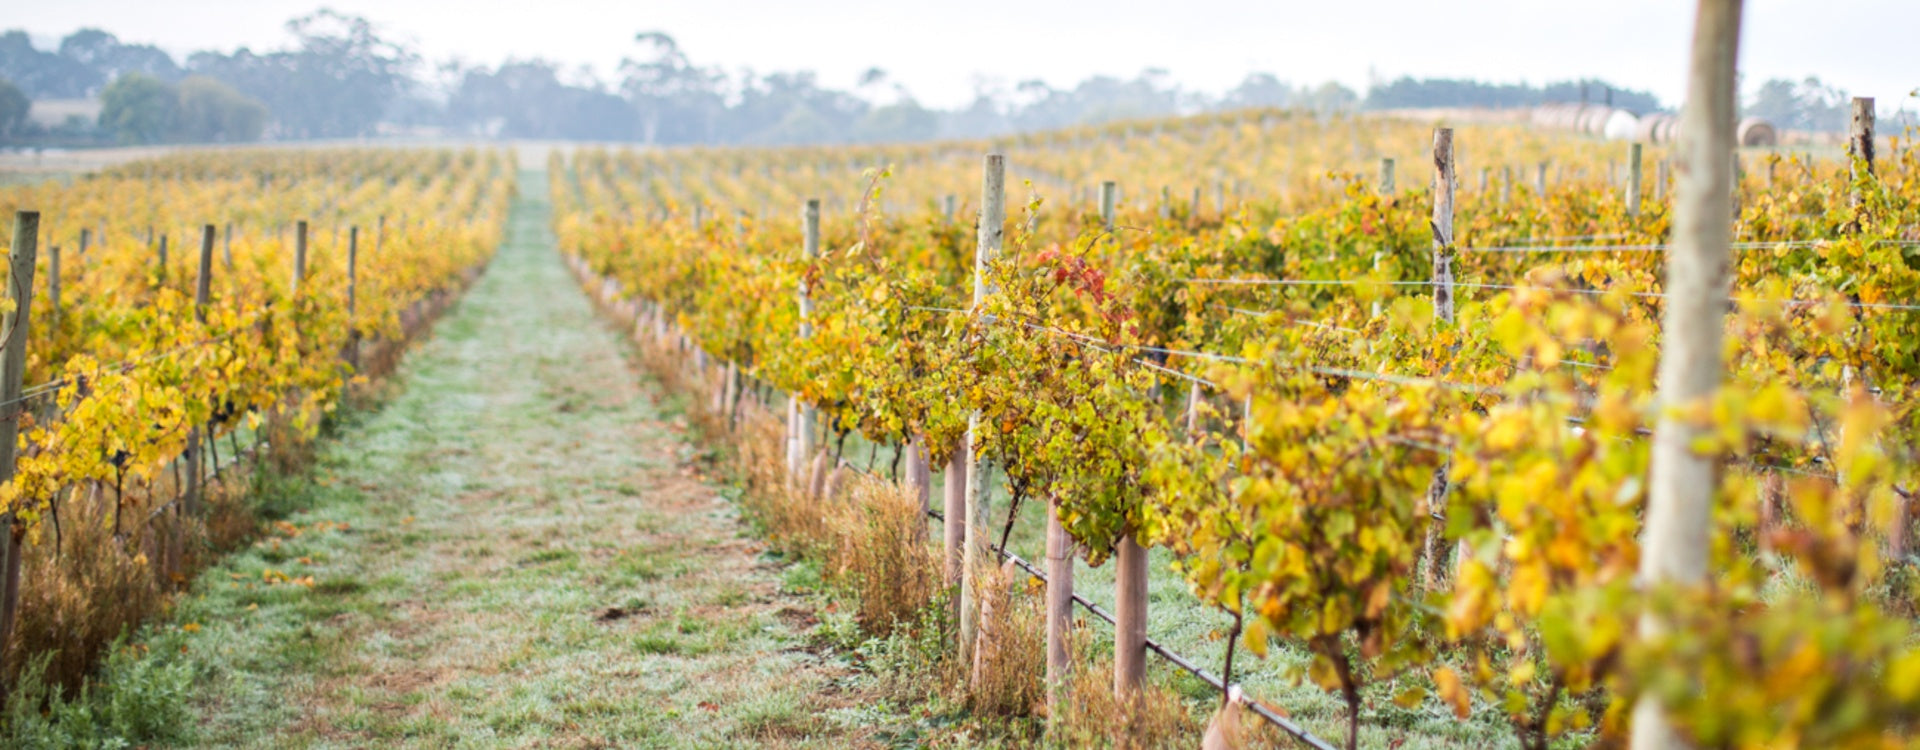 Colourful vineyards in Geelong's Moorabool Valley Wine Region